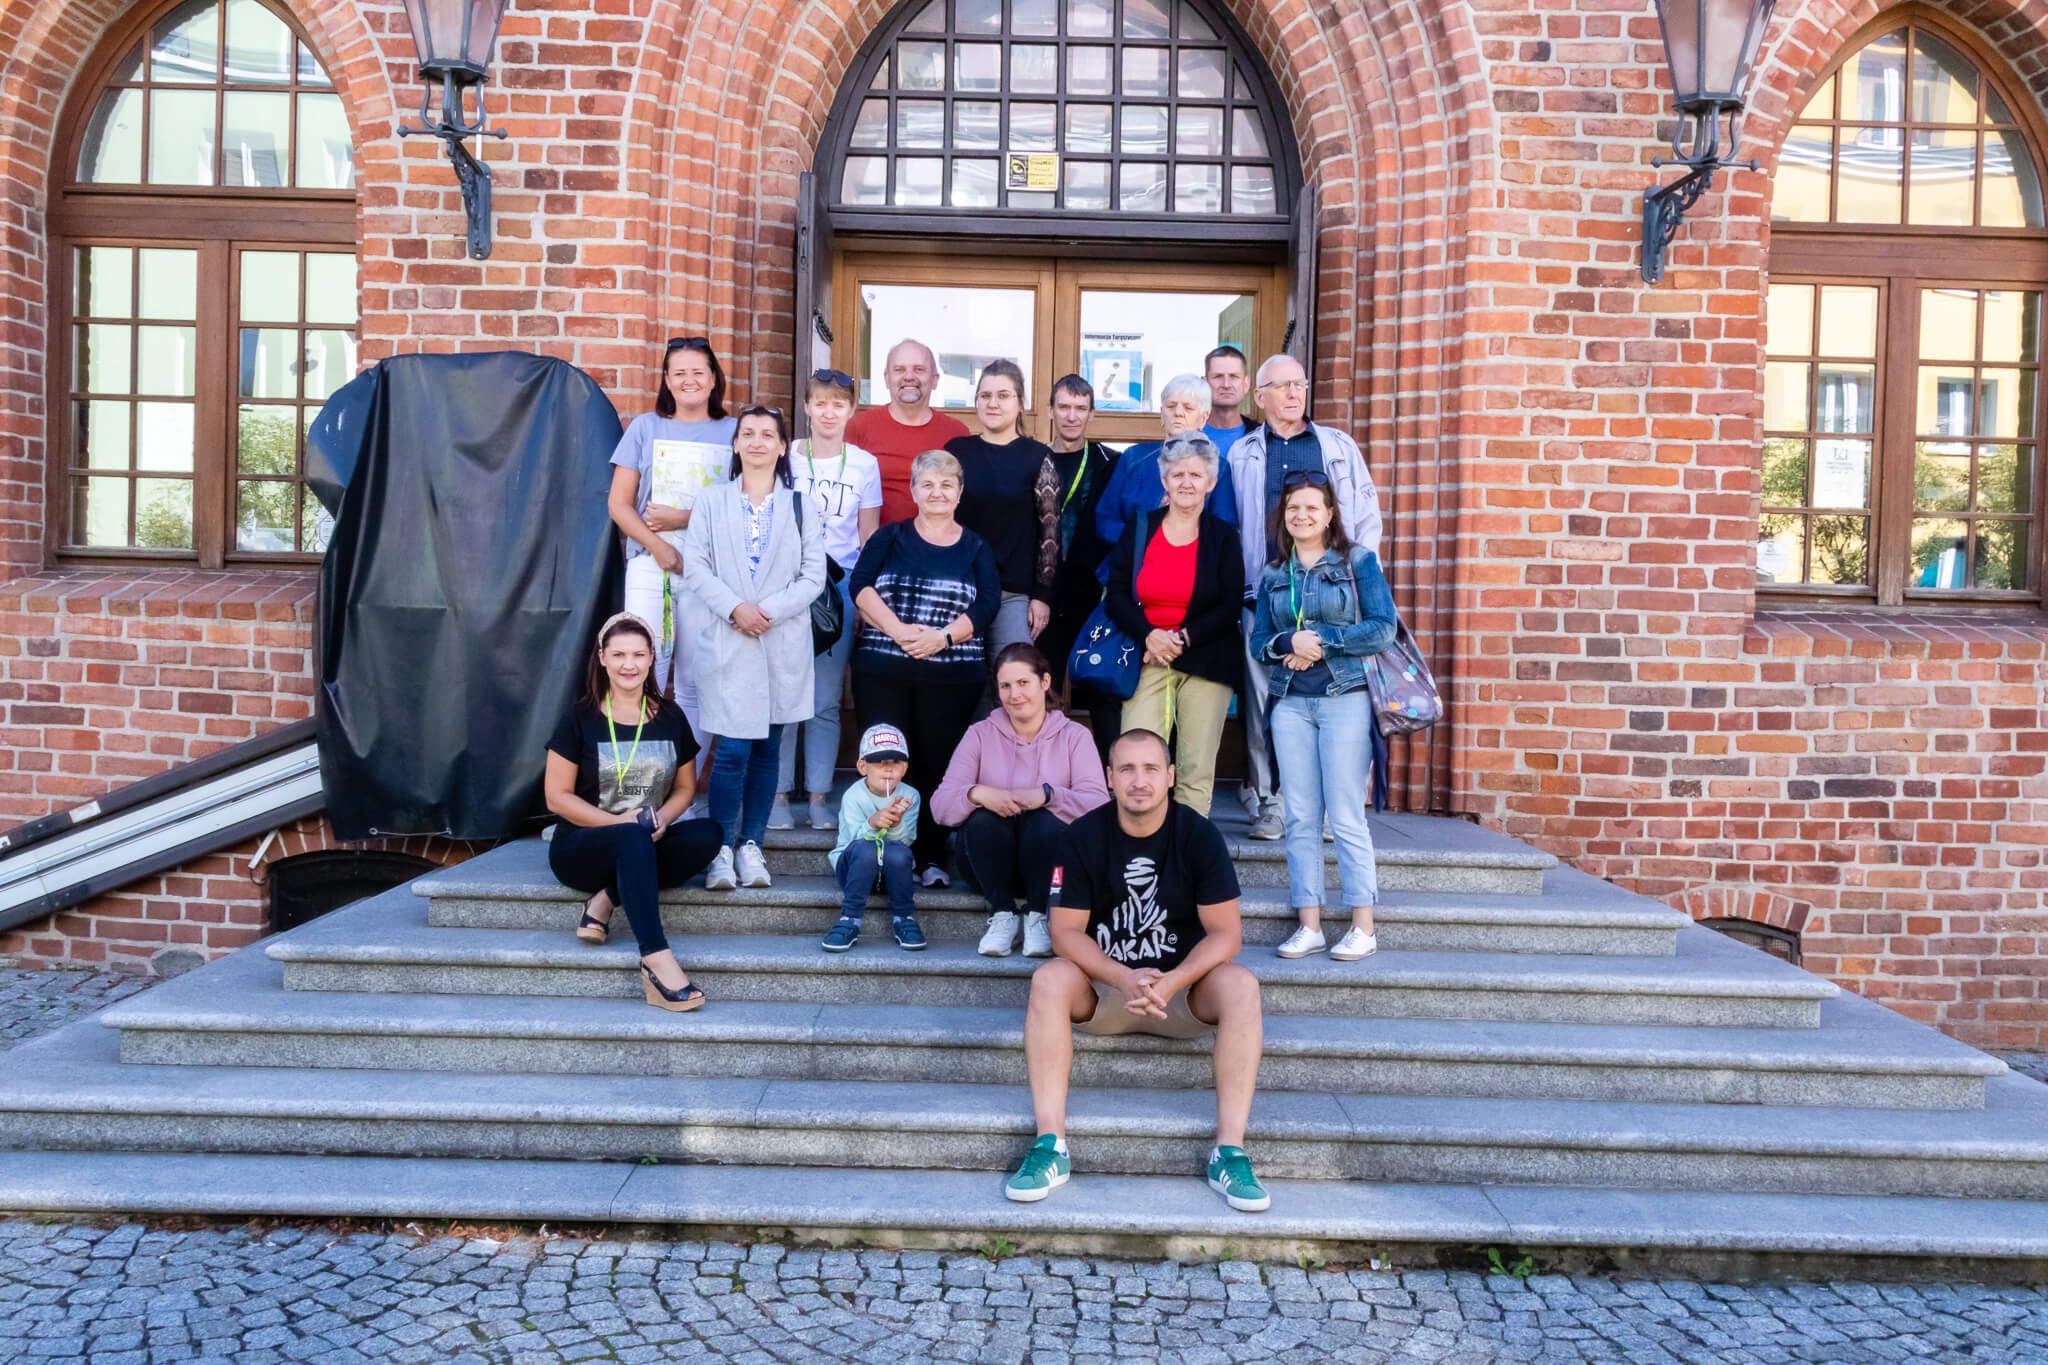 Grupowe zdjęcie członków stowarzyszenia stojących na schodach przed ratuszem w Morągu